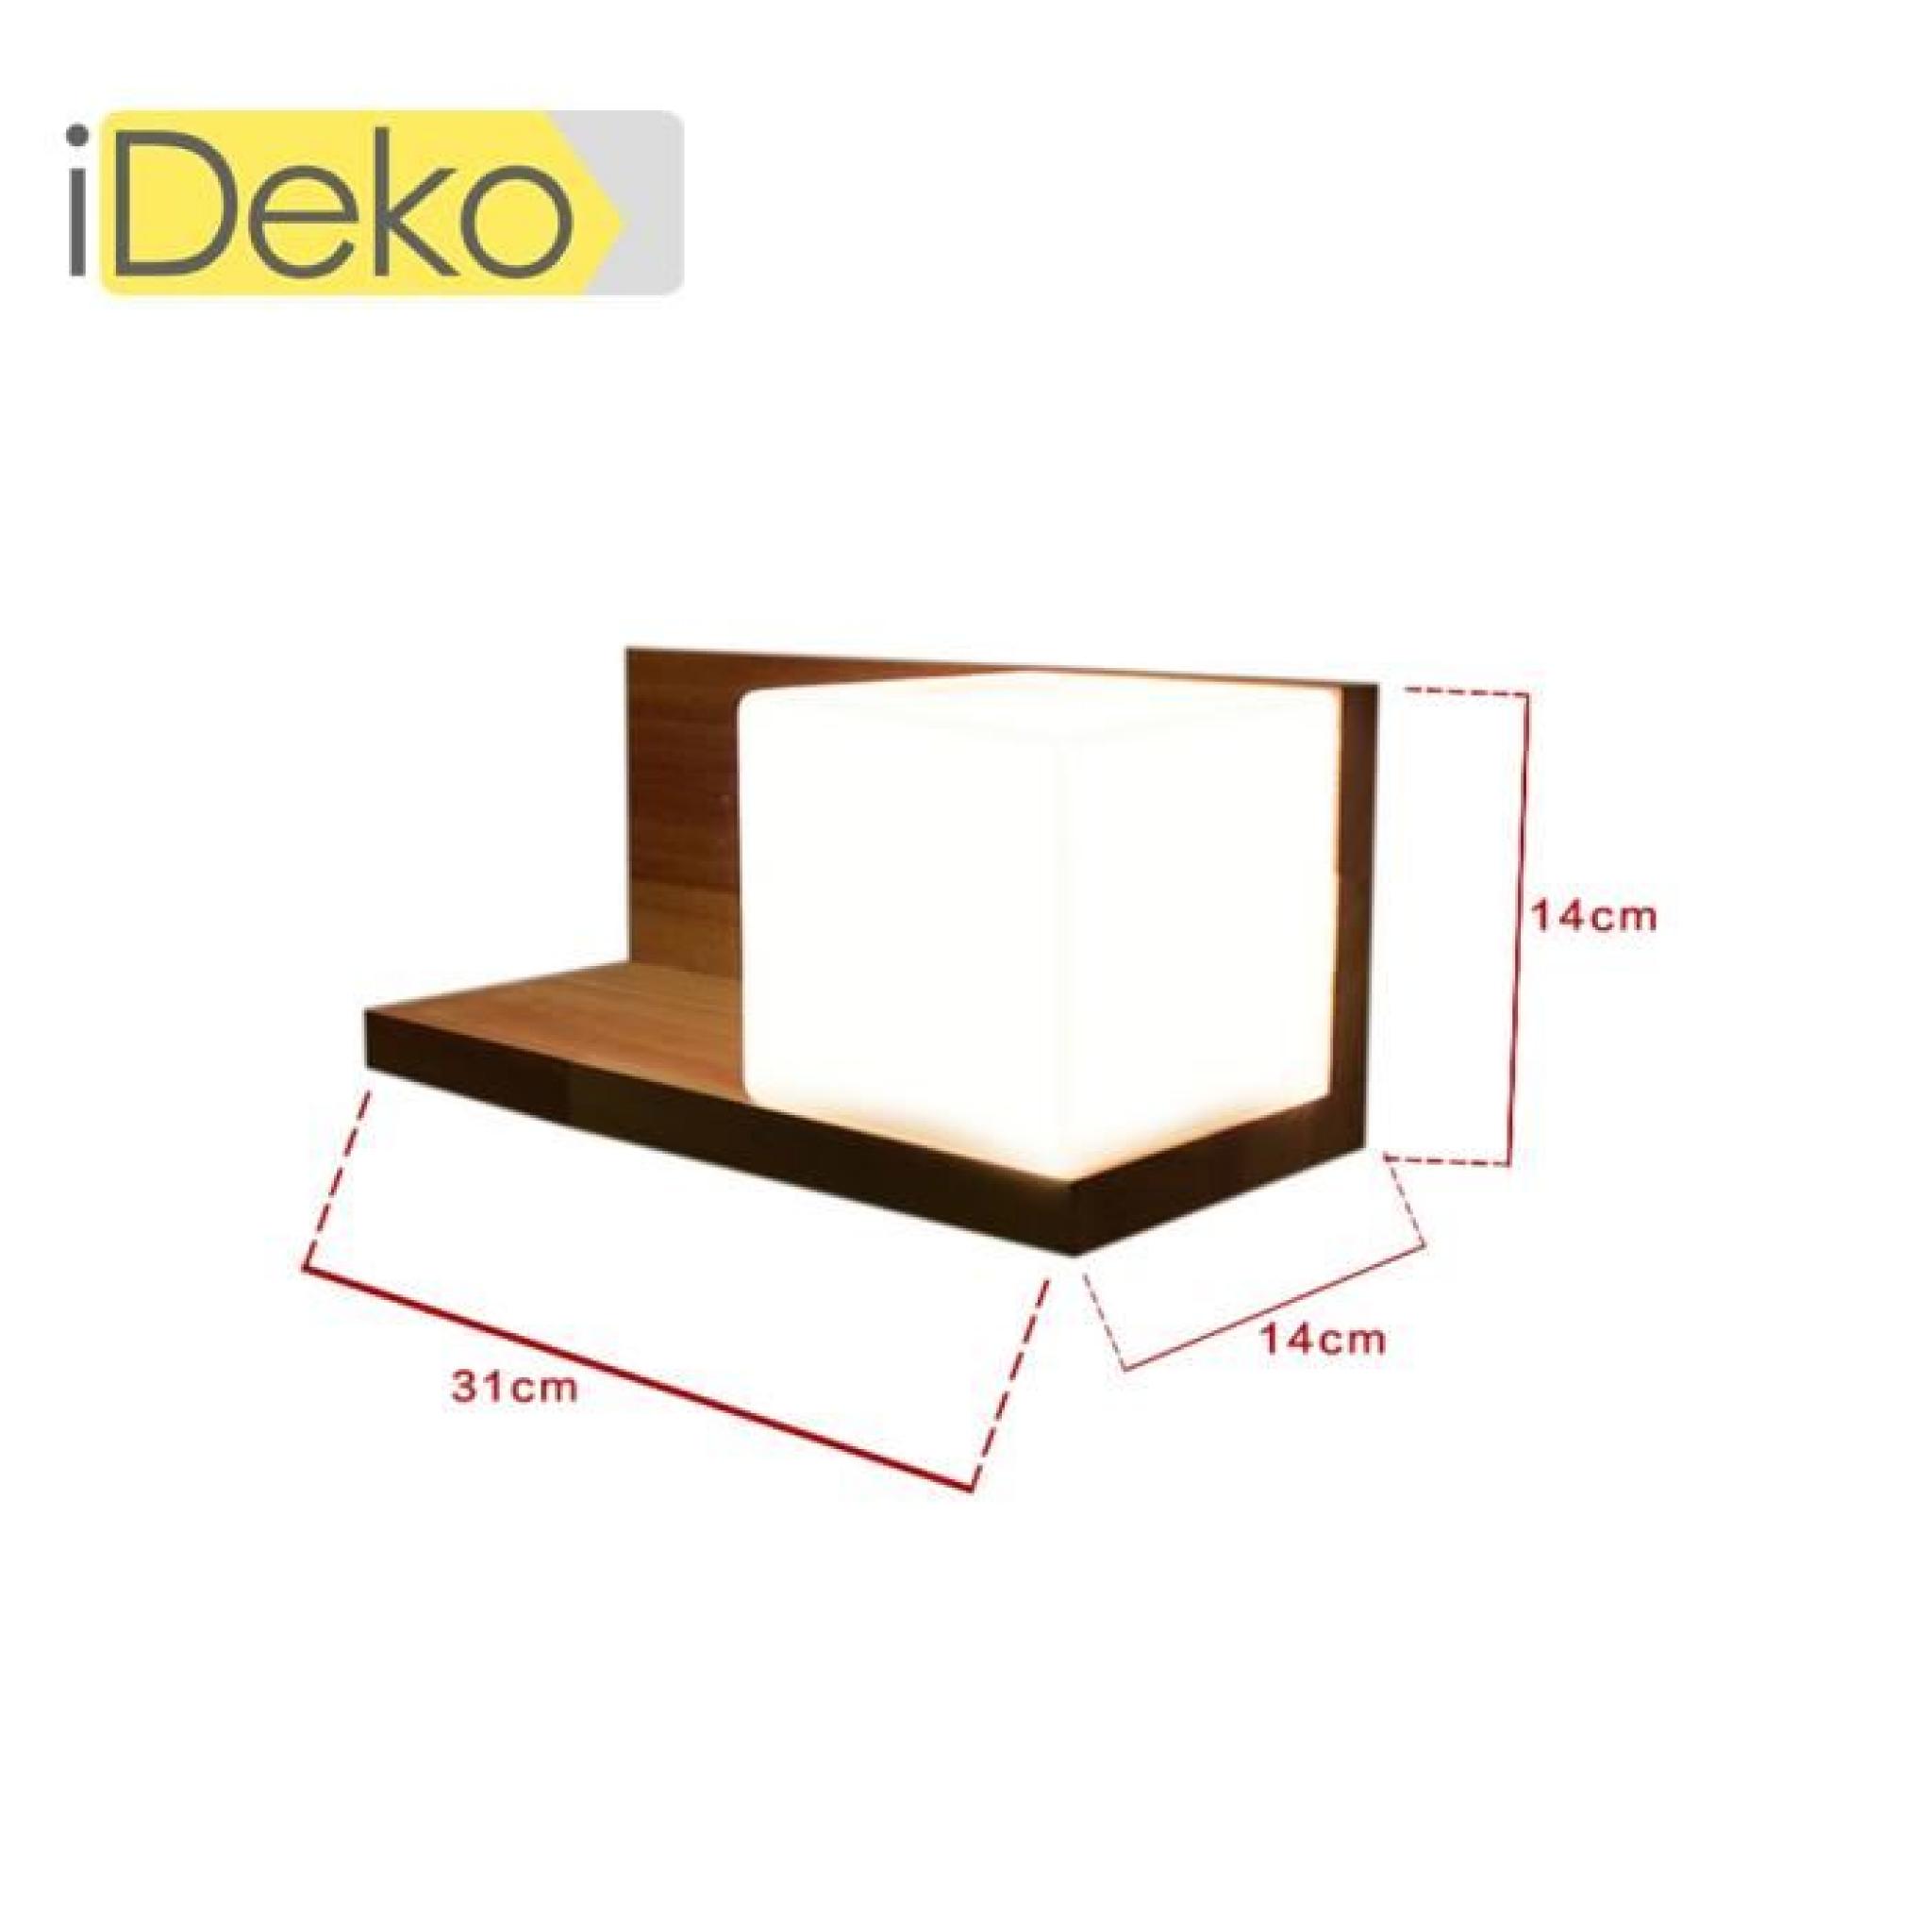 iDeko® Lampe à poser bureau table chevet Art design suspension unique nordique en Bois pas cher